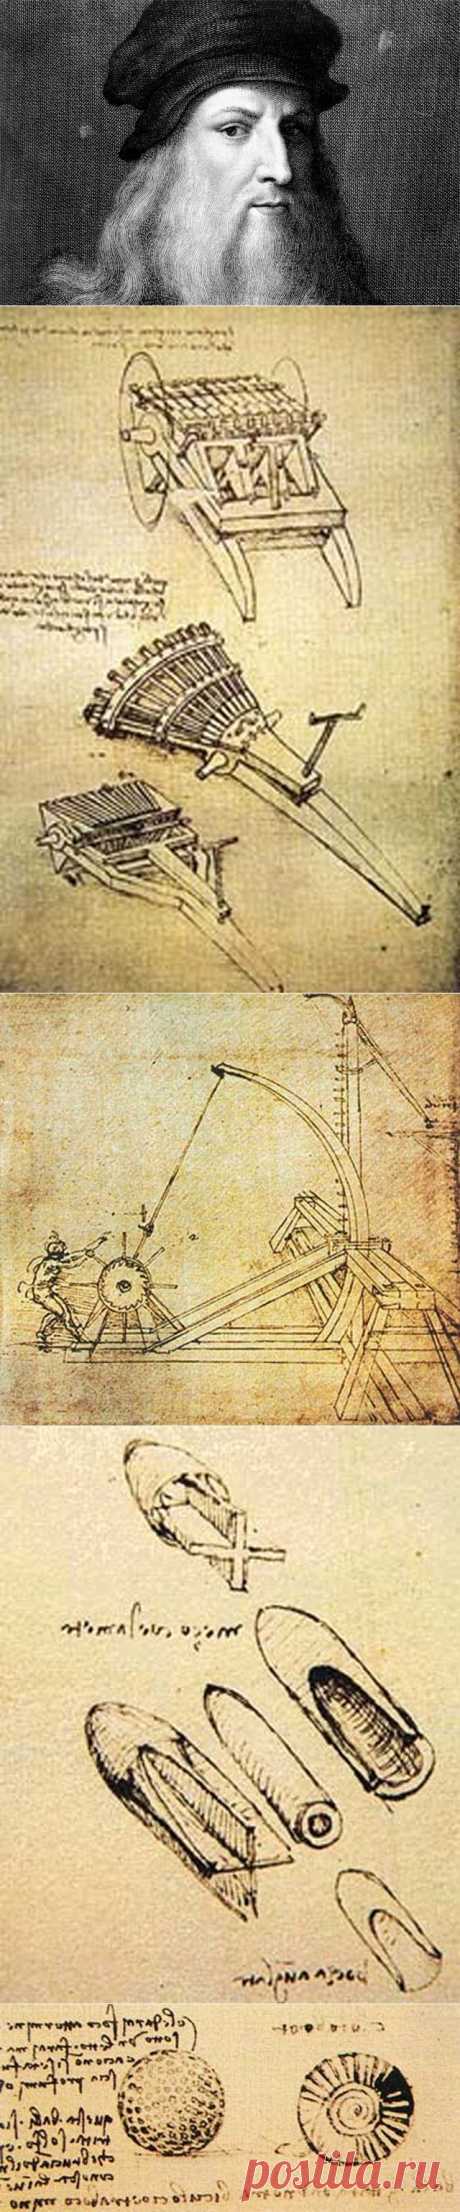 Зло ради знания: как Леонардо да Винчи разрабатывал смертоносное оружие | Необычная история